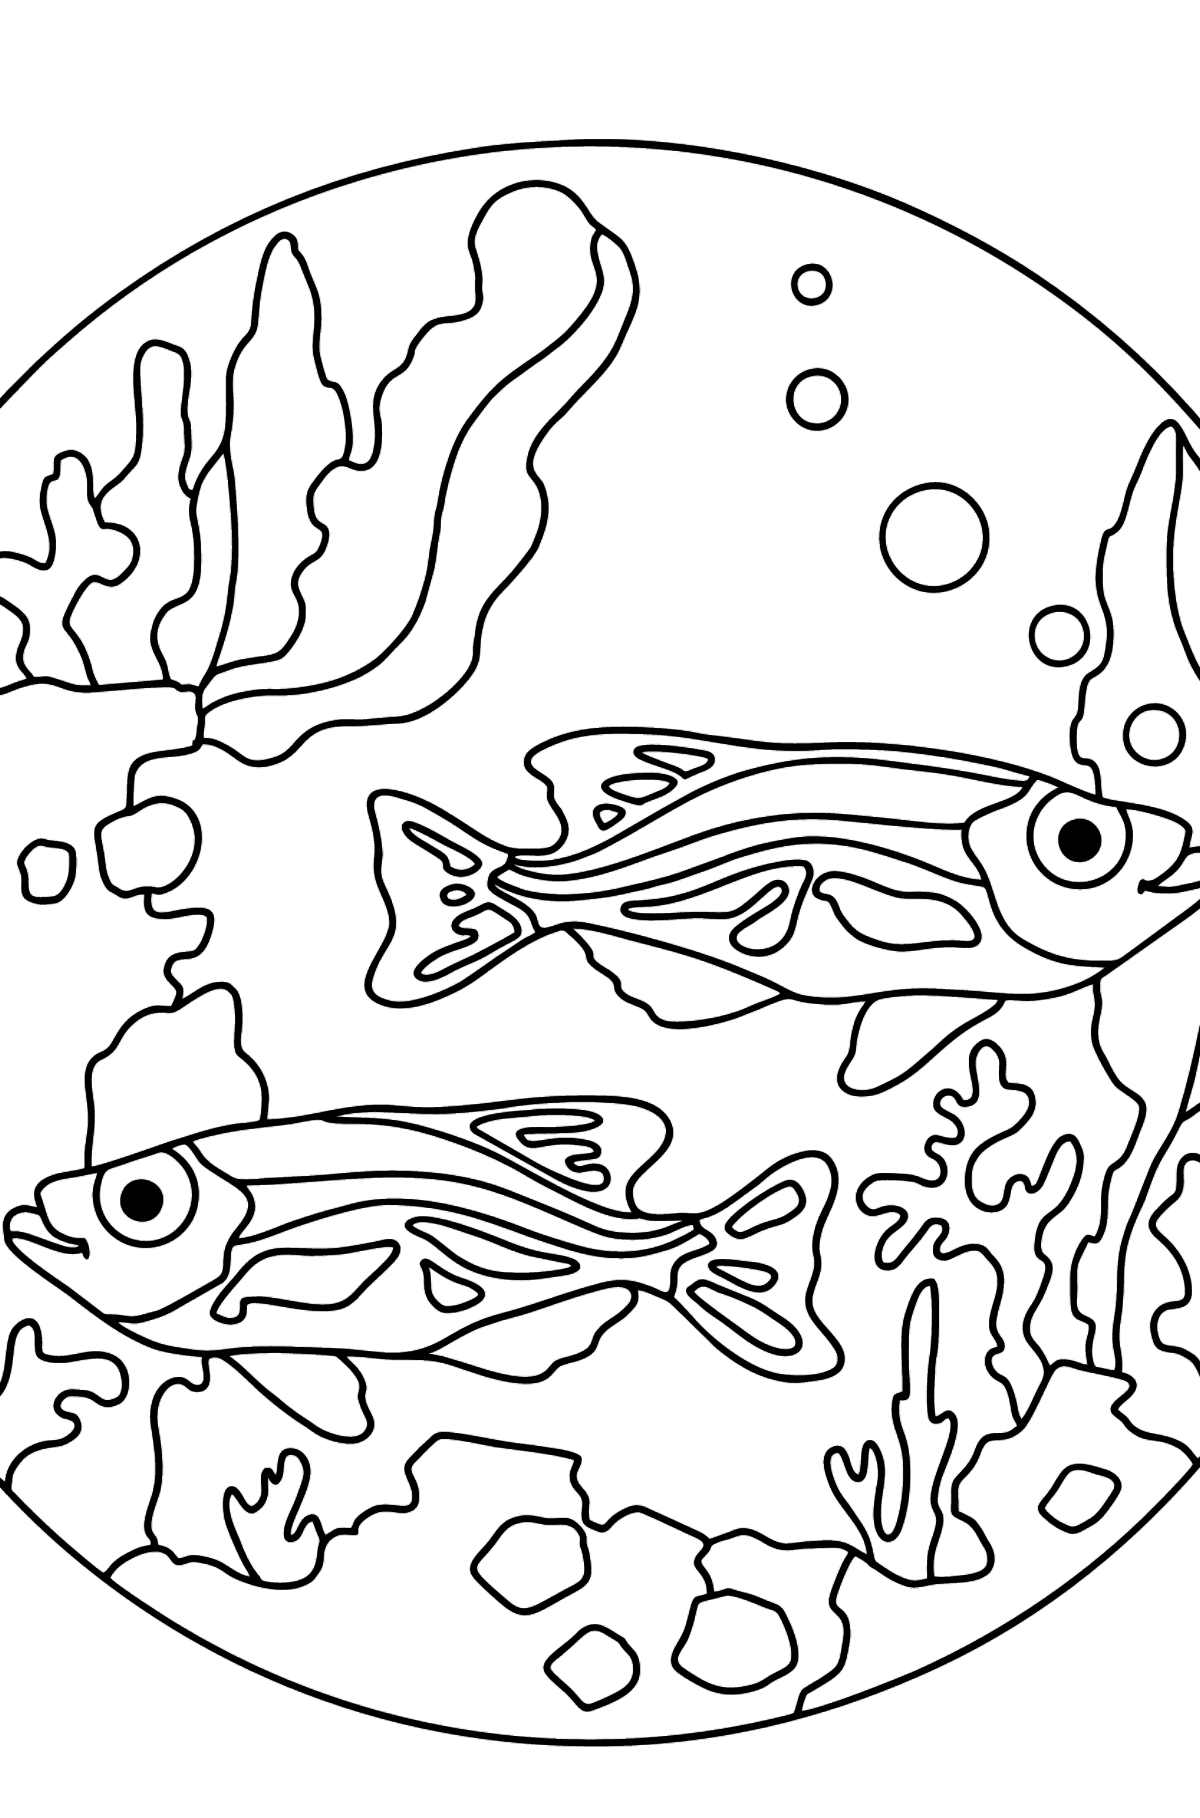 Boyama sayfası balık tankı (basit) - Boyamalar çocuklar için